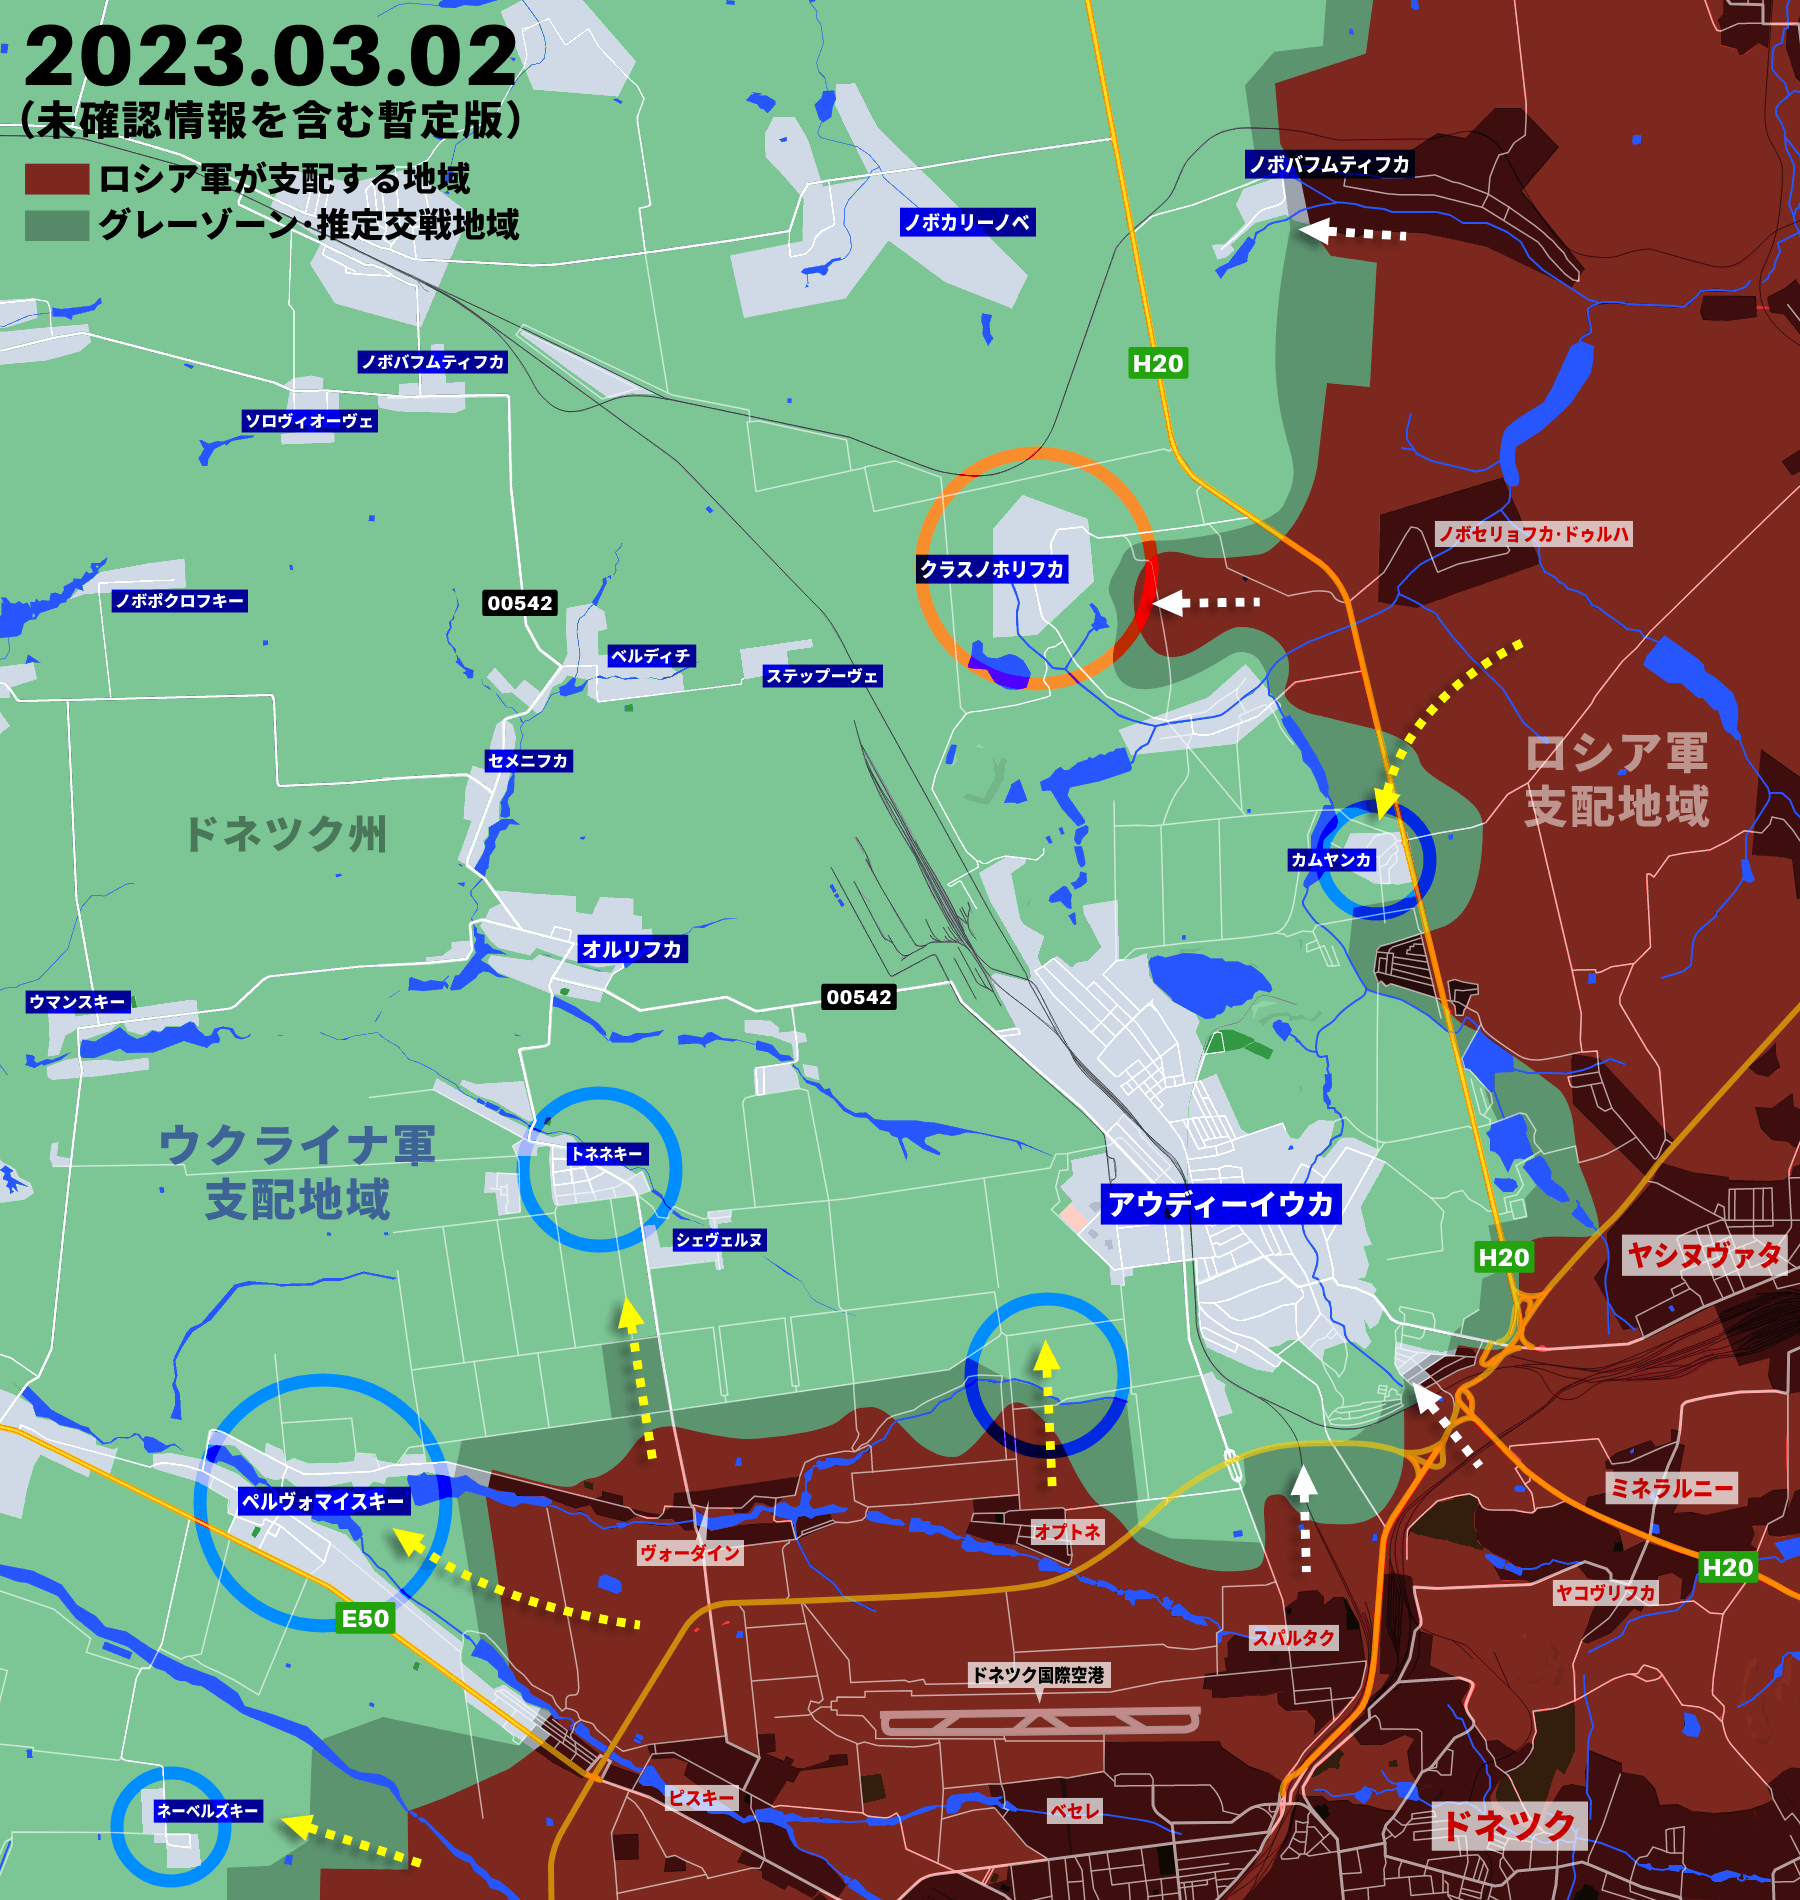 ウクライナ侵攻372日の戦況、ロシア軍がバフムートのアクセスルート遮断に王手